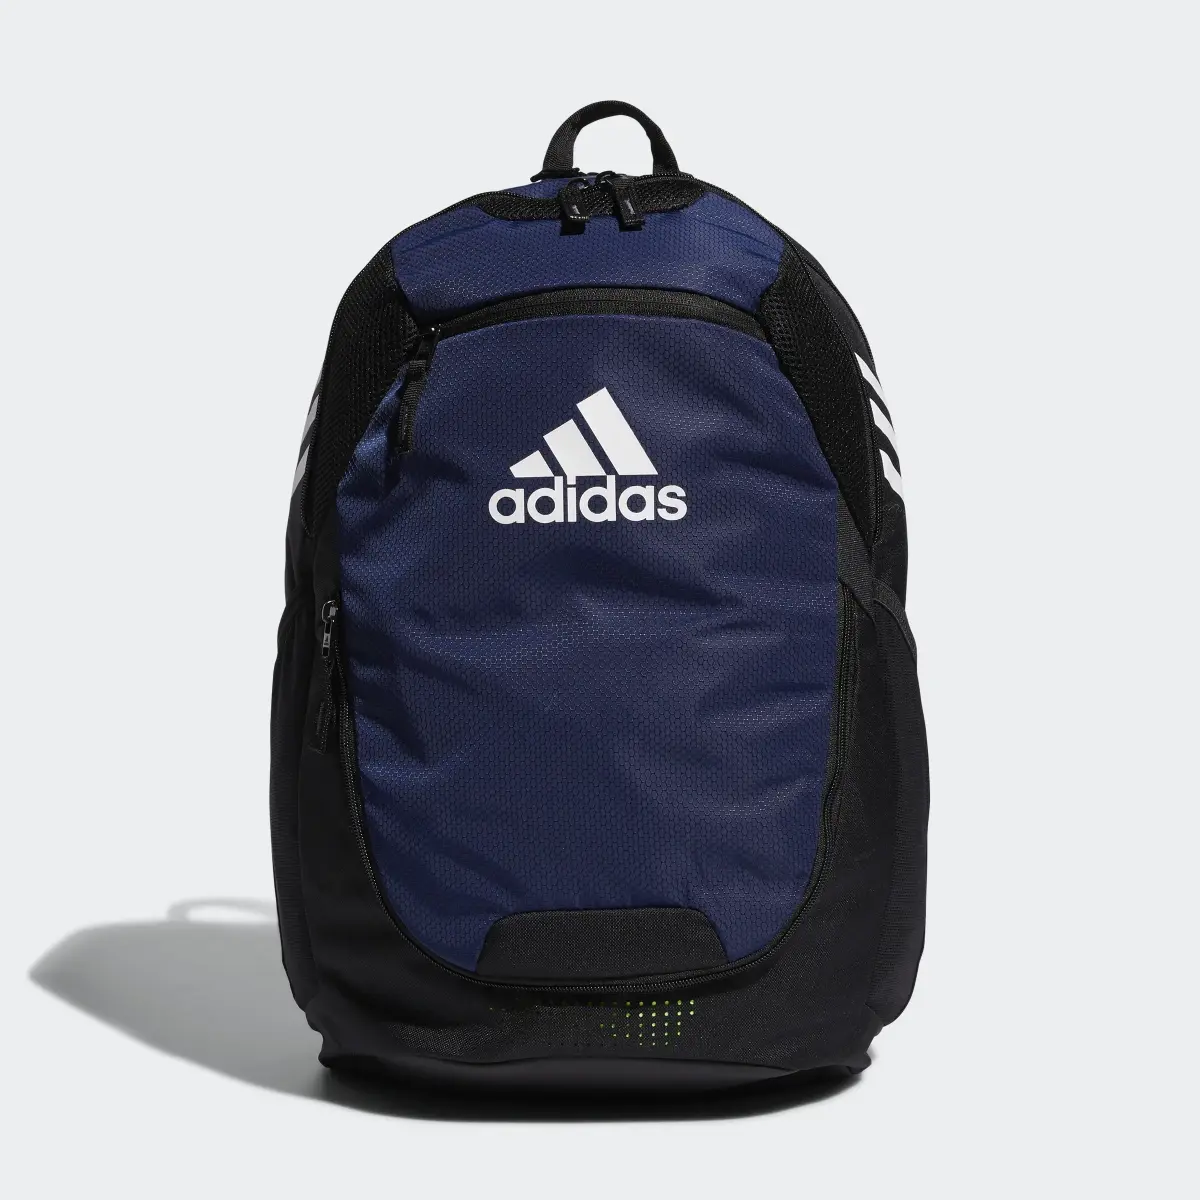 Adidas Stadium Backpack. 2